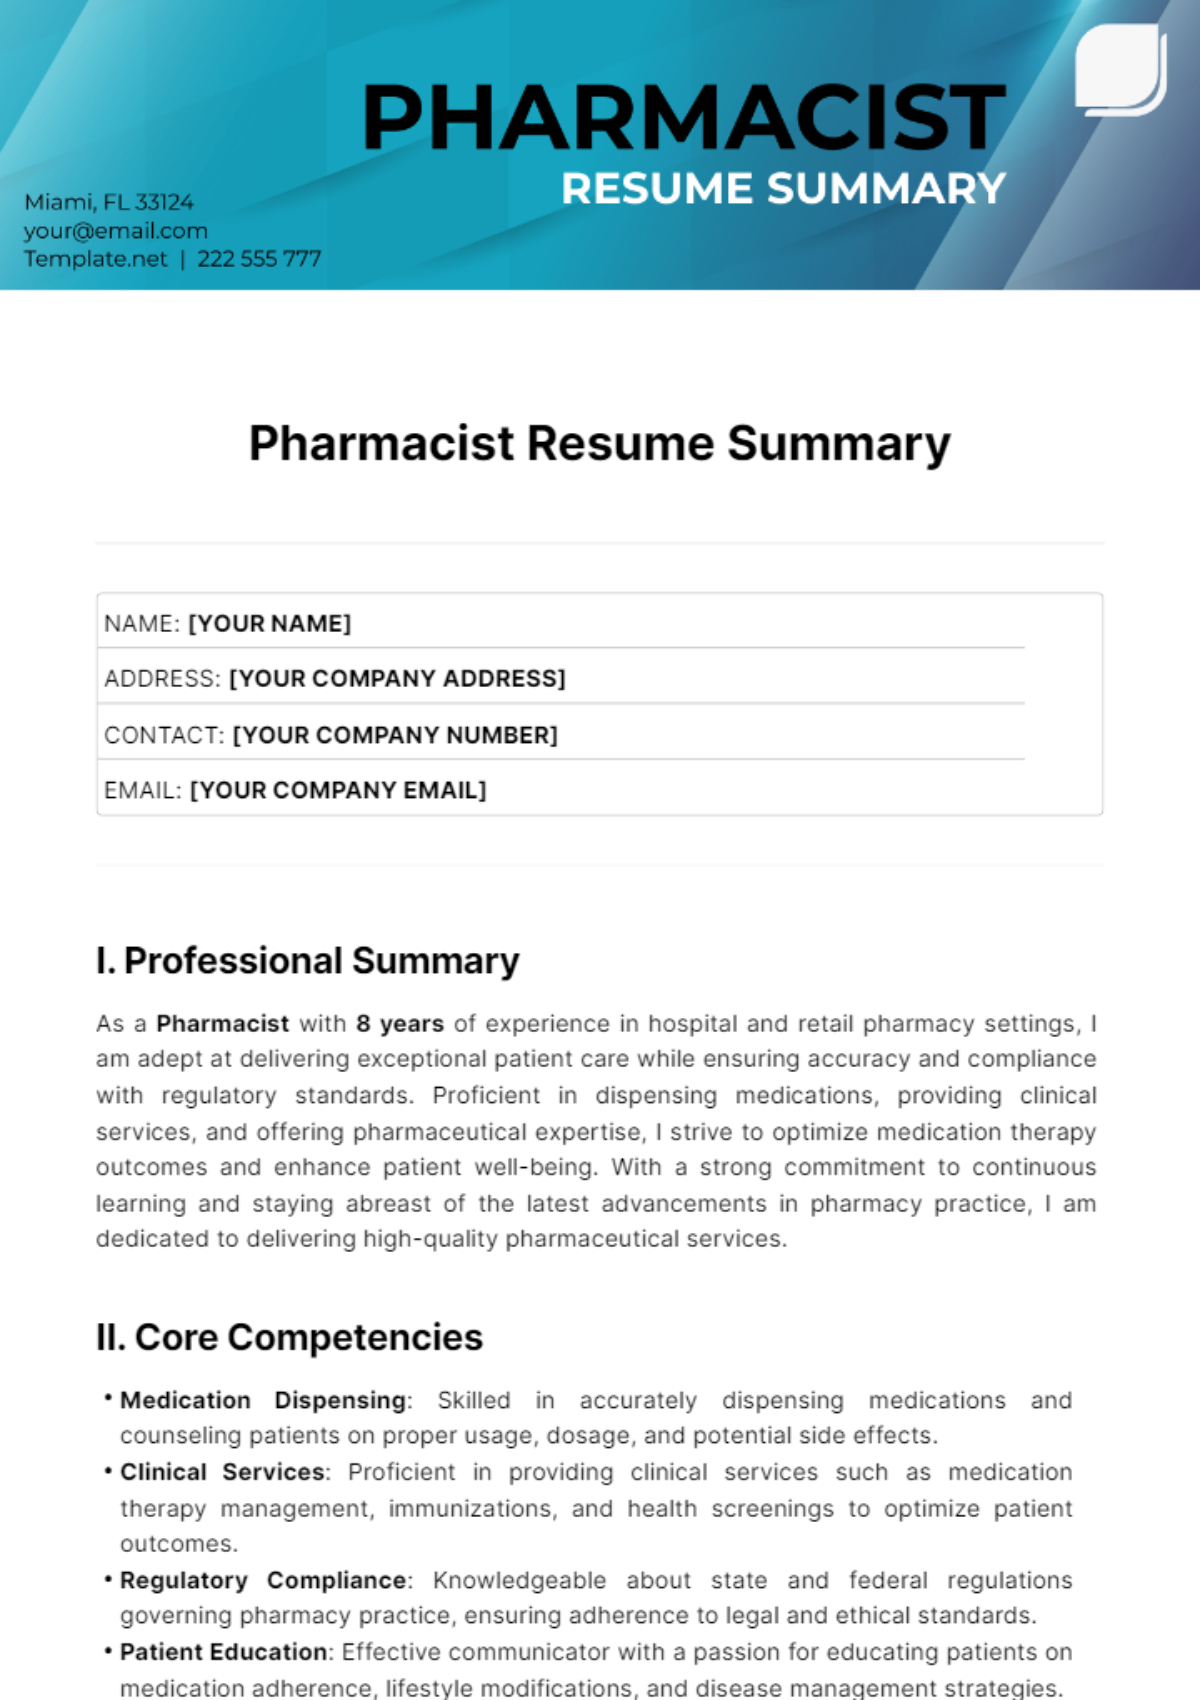 Pharmacist Resume Summary Template